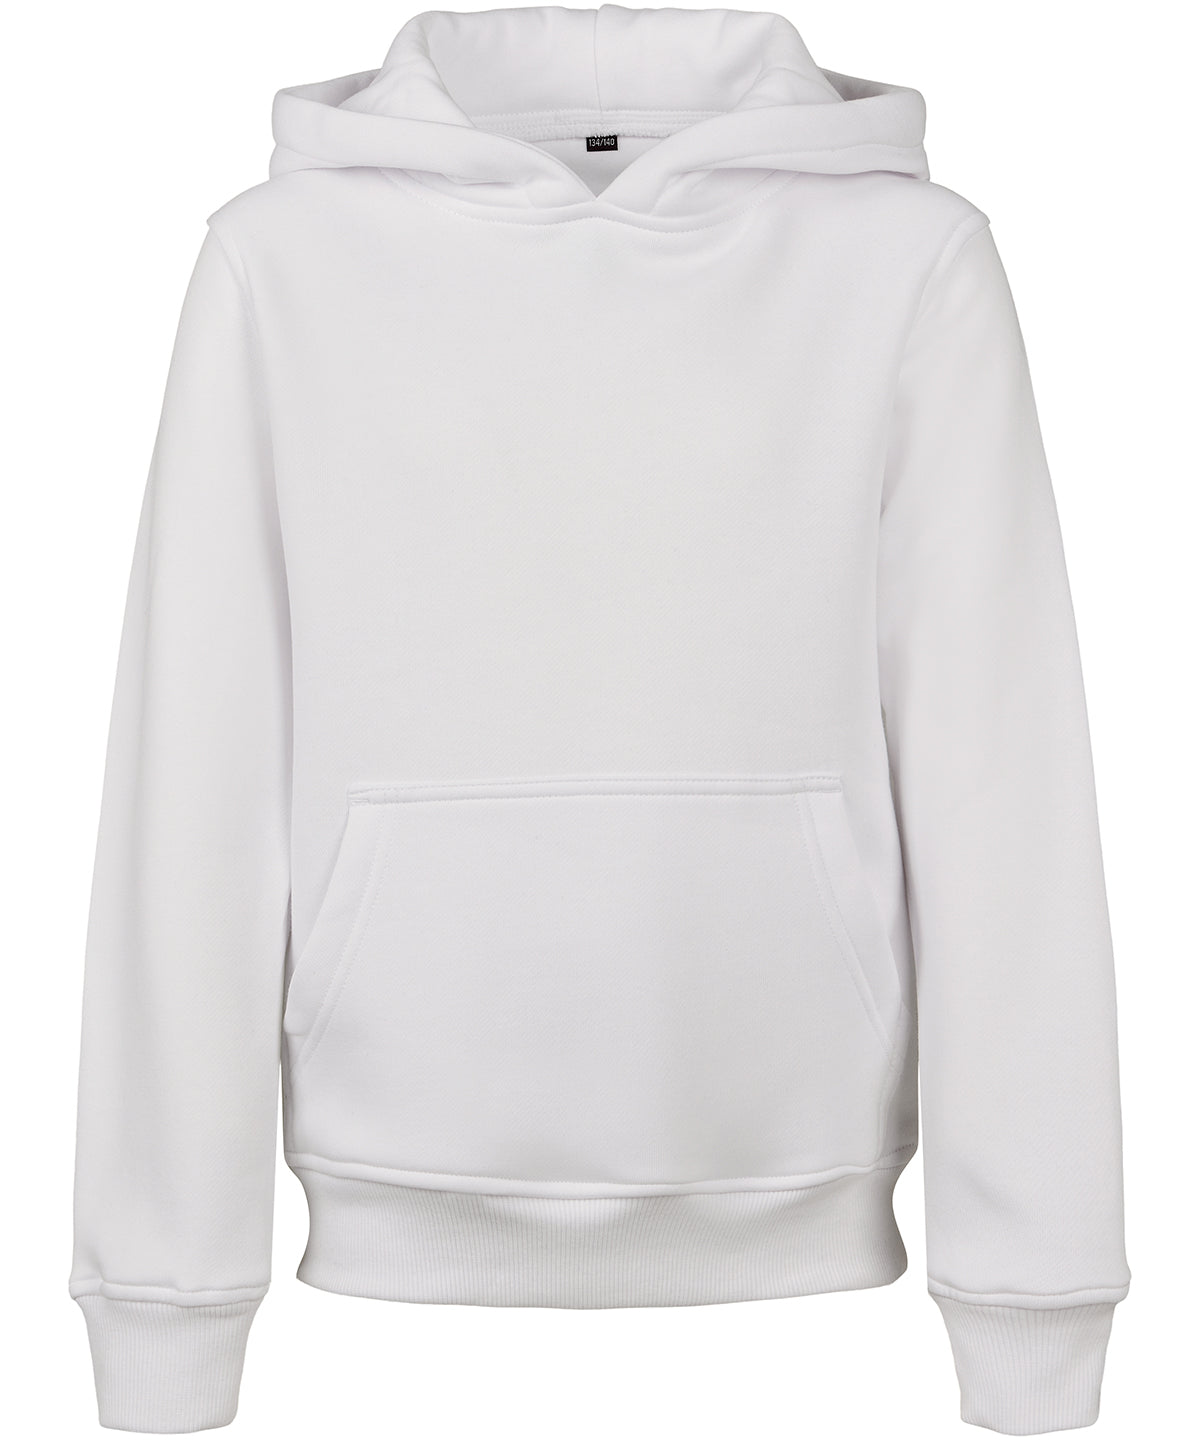 Personalised Hoodies - Light Pink Build Your Brand Kids basic hoodie